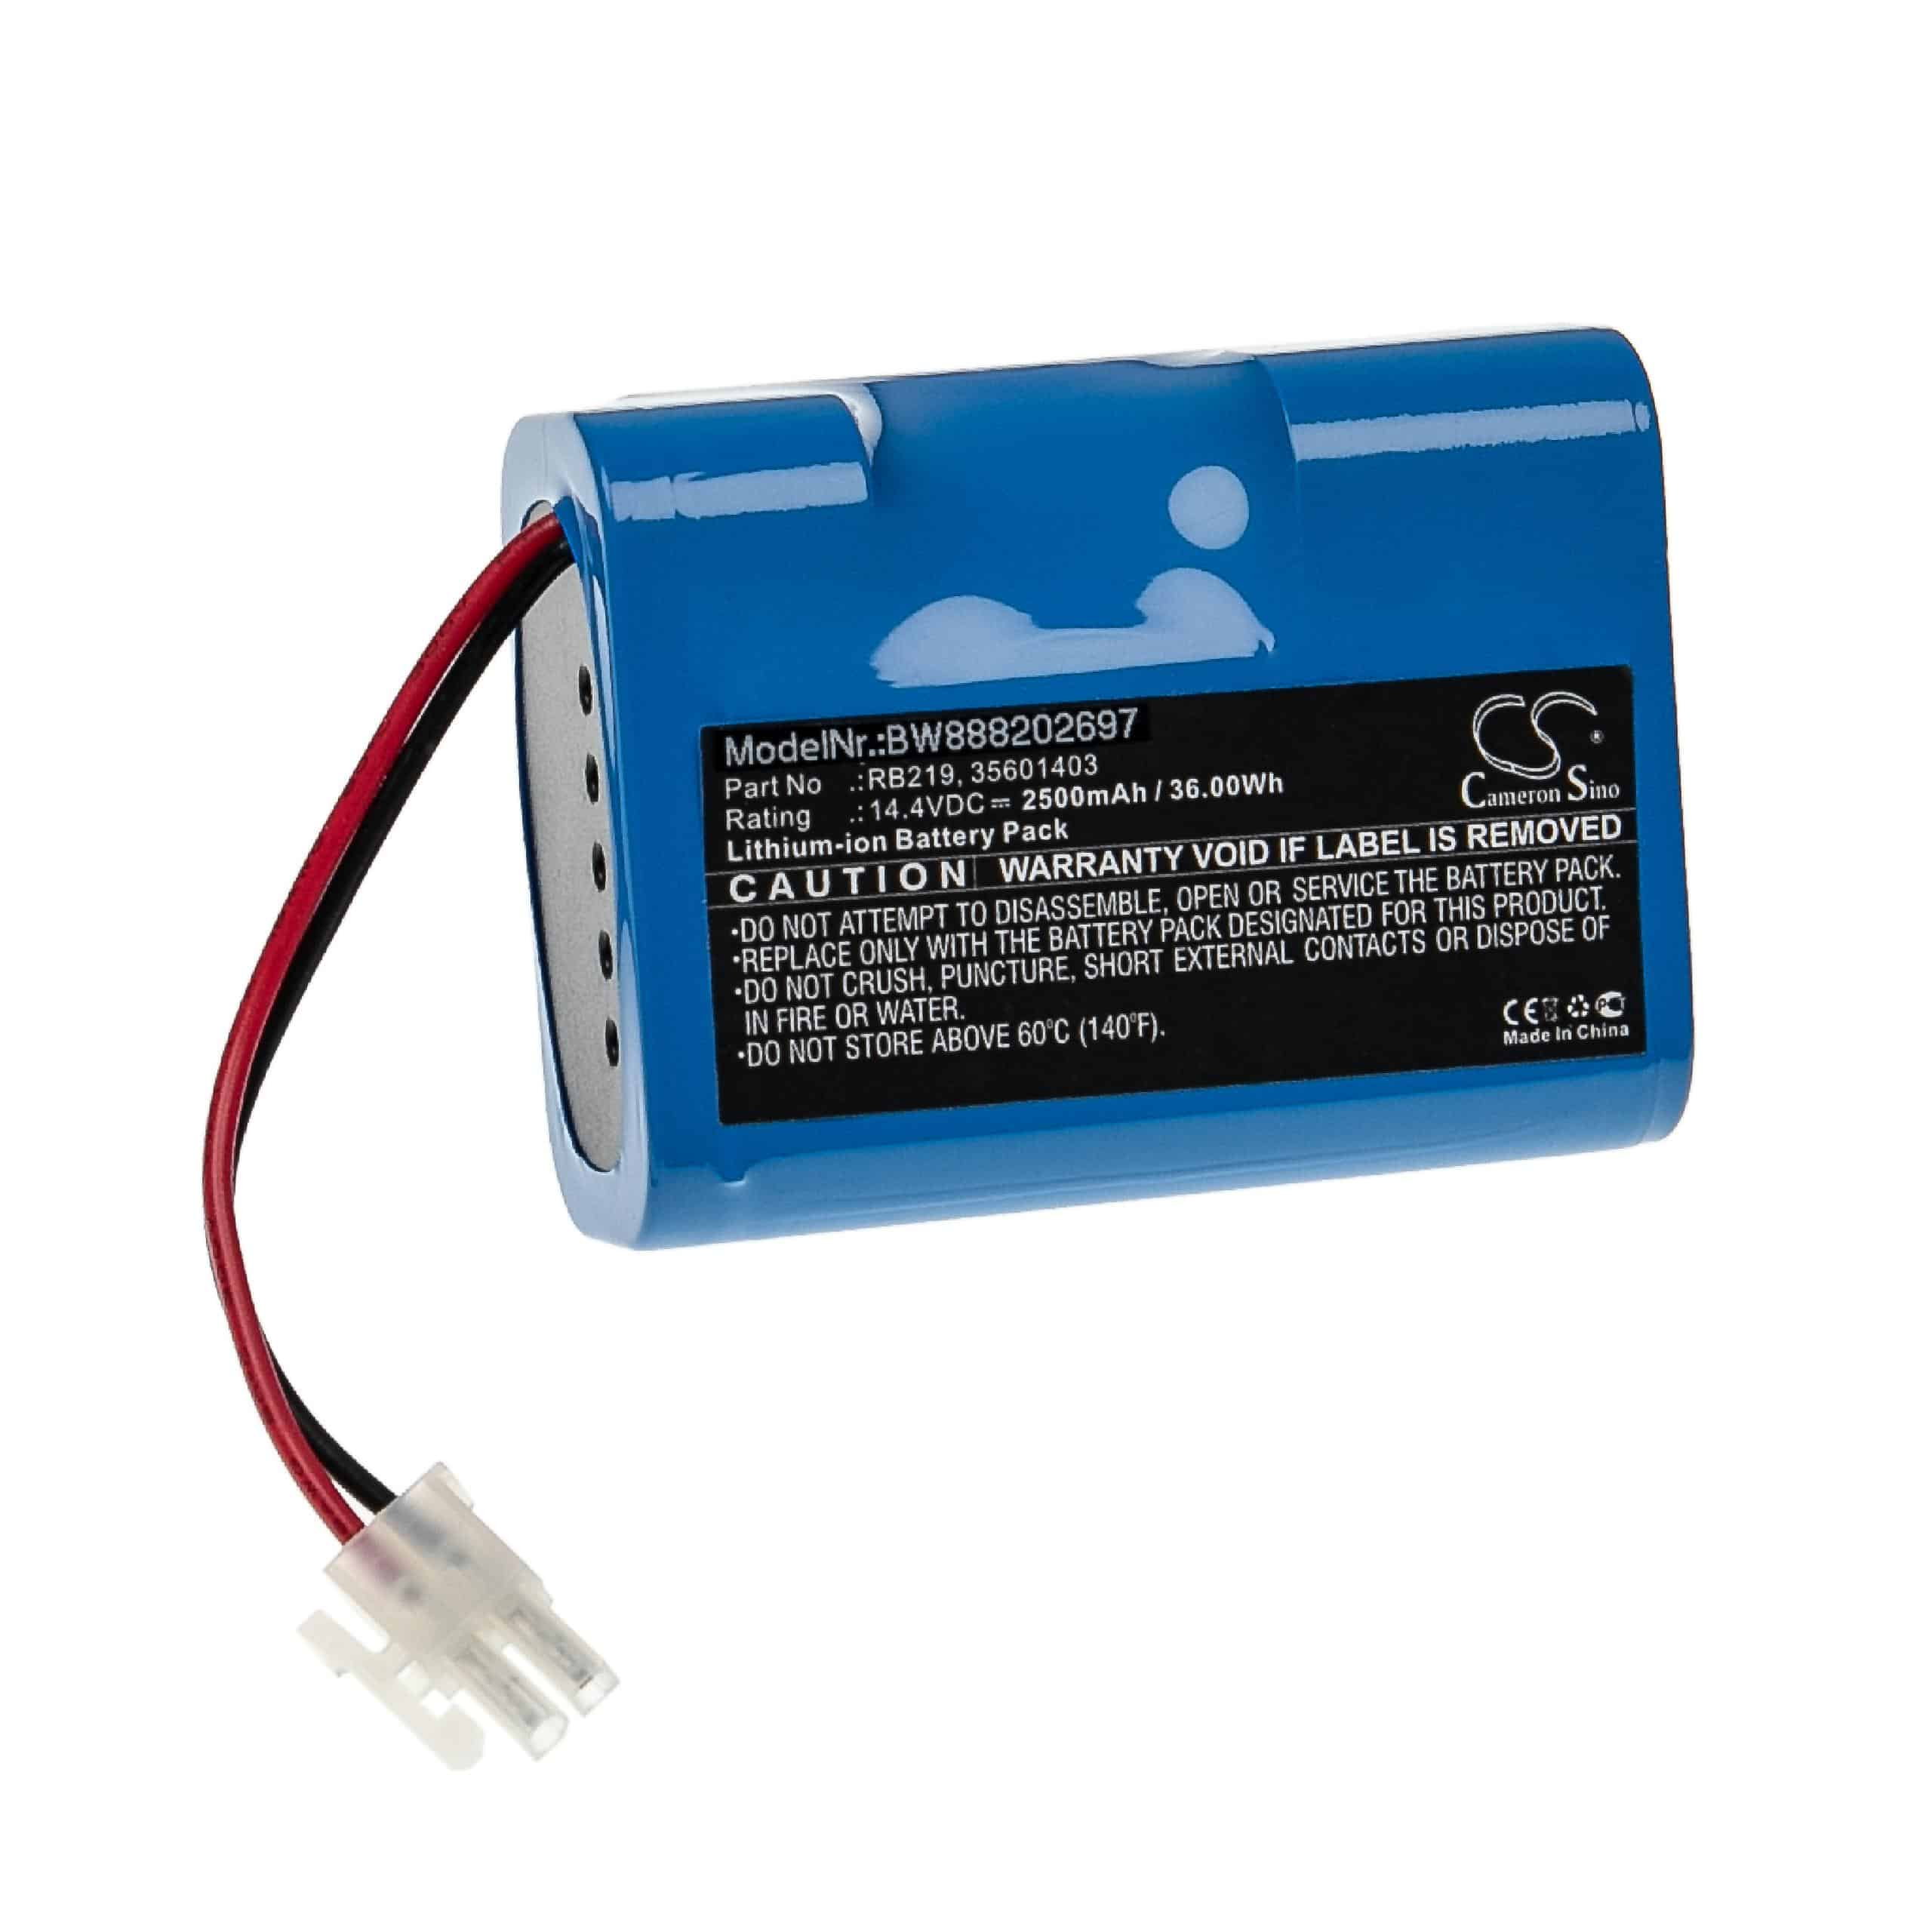 Batterie remplace Hoover 35601727, 35601403, RB219, Li-RB226 pour robot aspirateur - 2500mAh 14,4V Li-ion